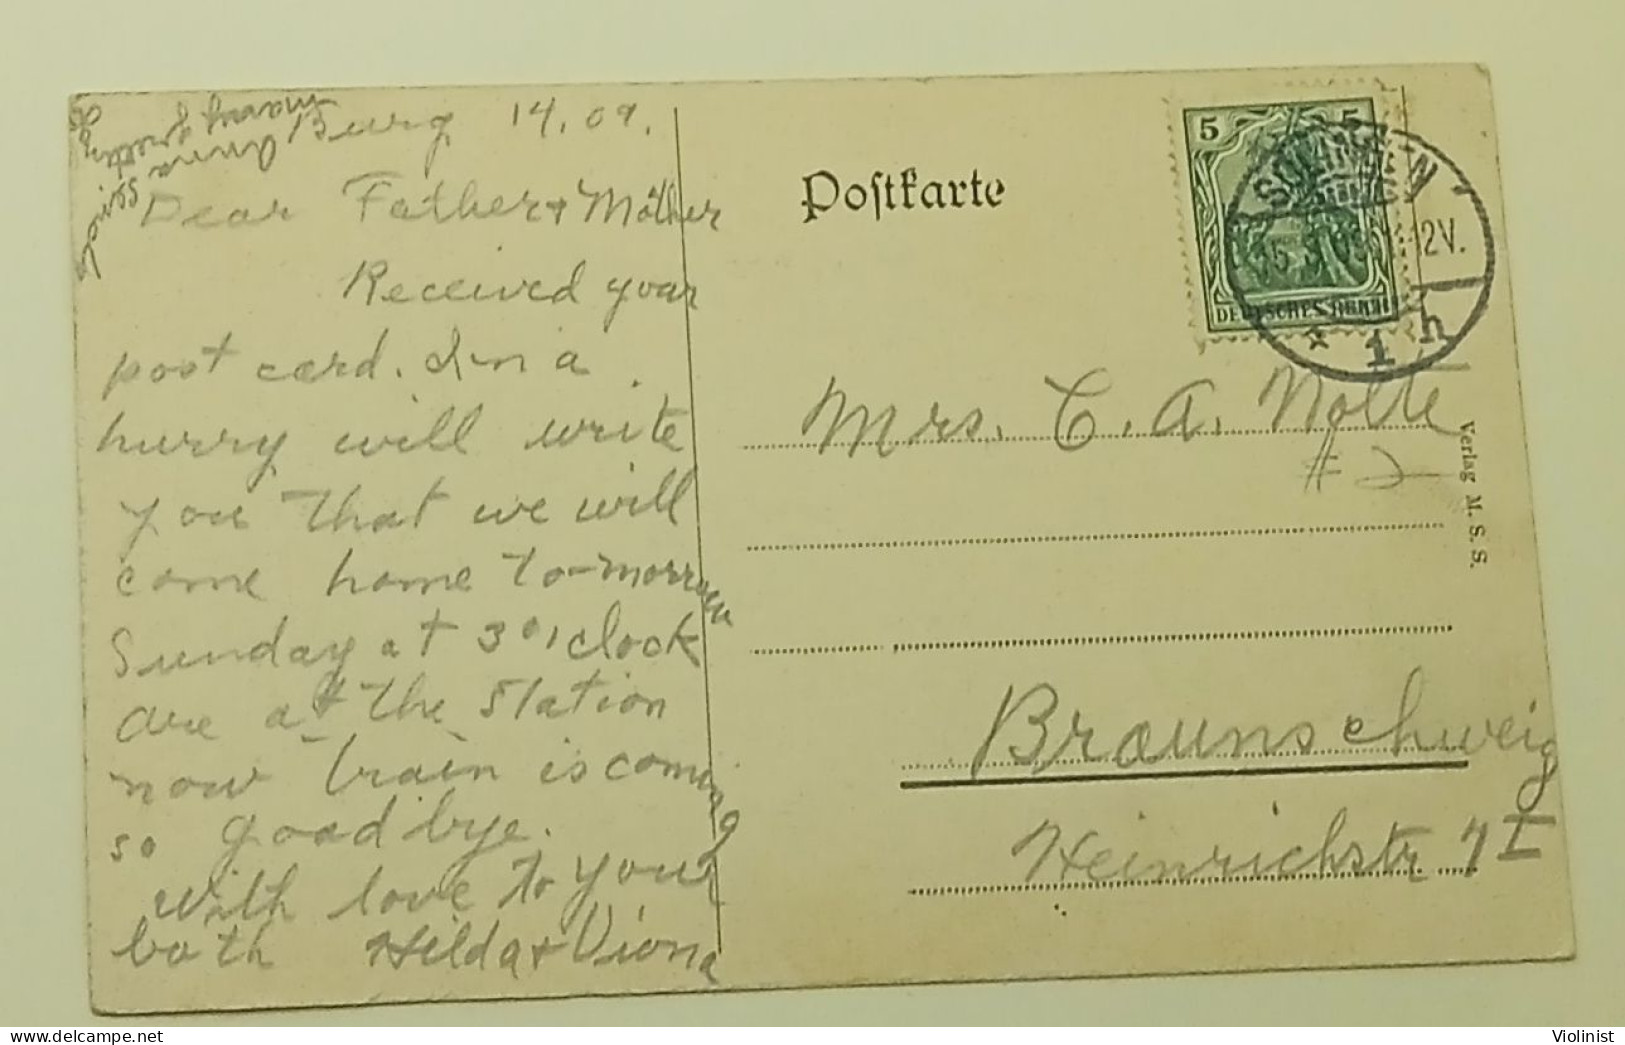 Germany-Kaiser-Wilhelm-Brücke Bei Müngsten(Müngstener Brücke)-Postmark SOLINGEN 1909. - Solingen